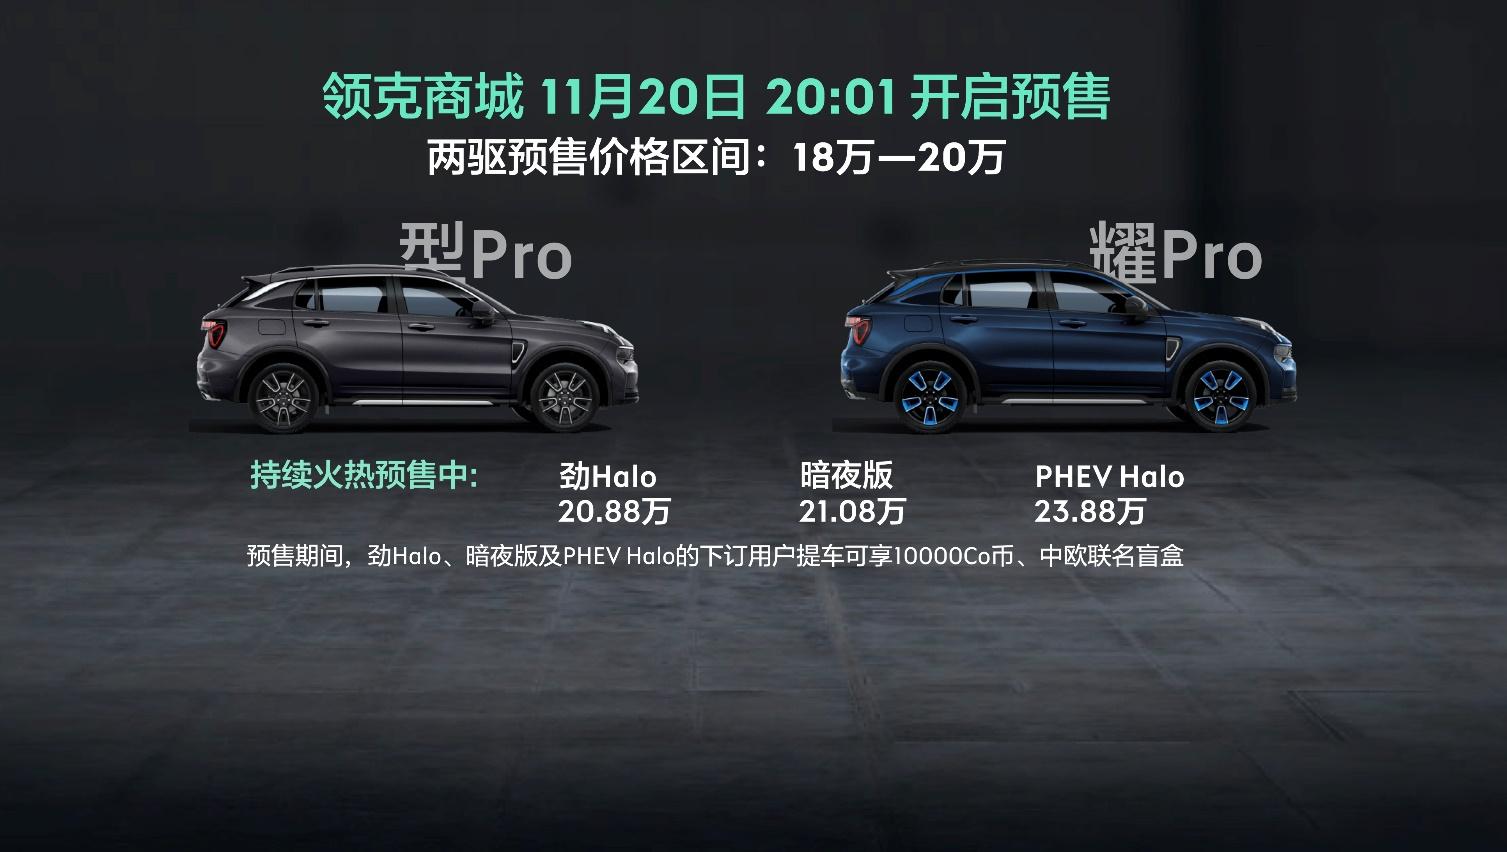 18万-20万元 全新领克01广州车展开启全系预售